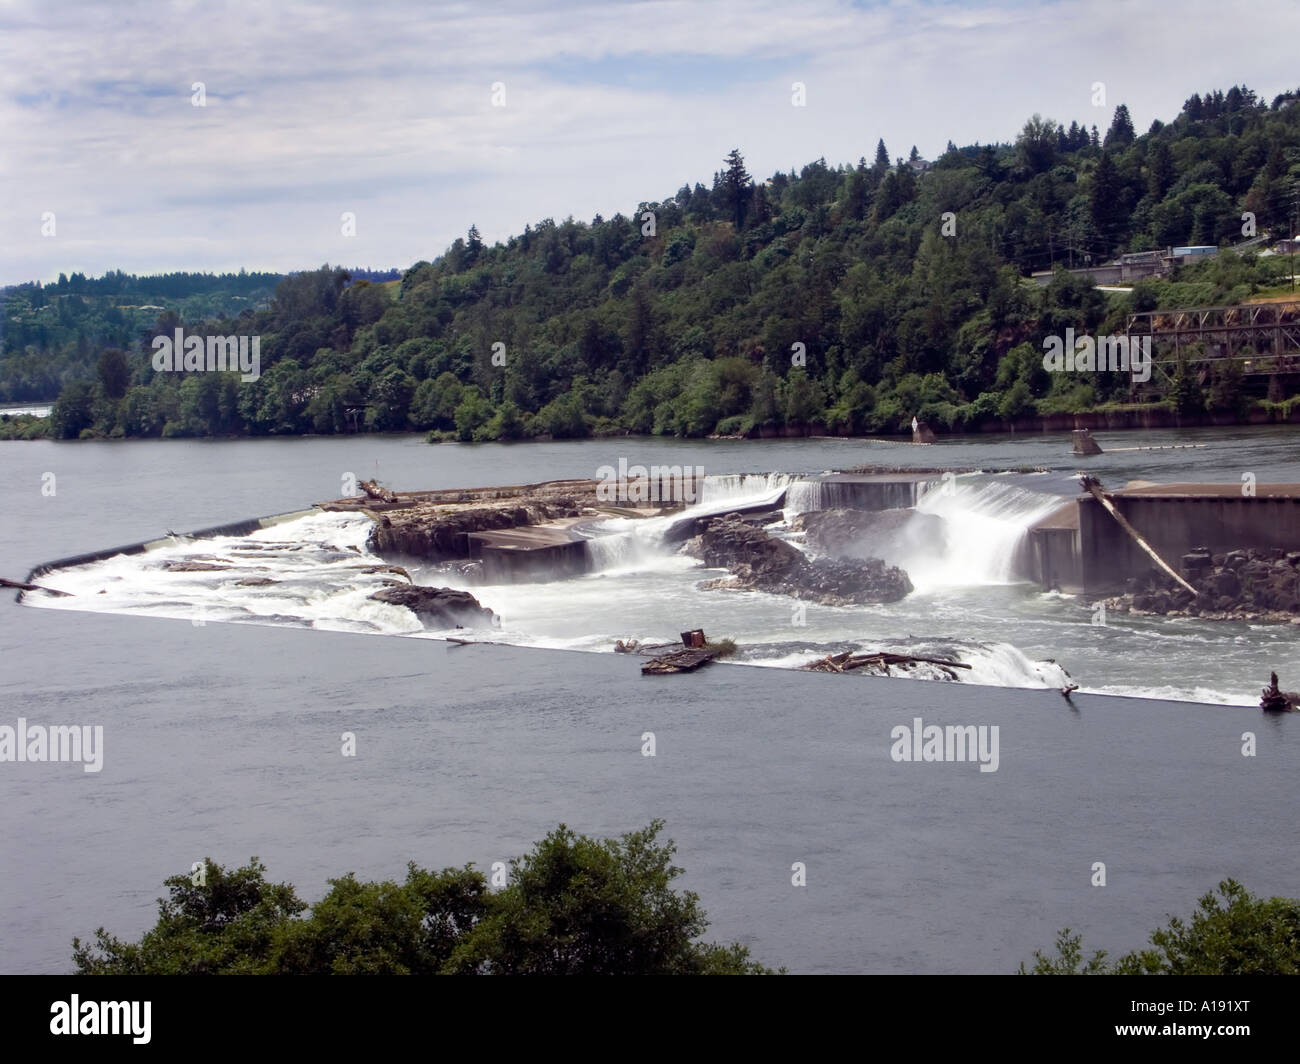 Willamette Falls on the Willamette River near Oregon City Stock Photo